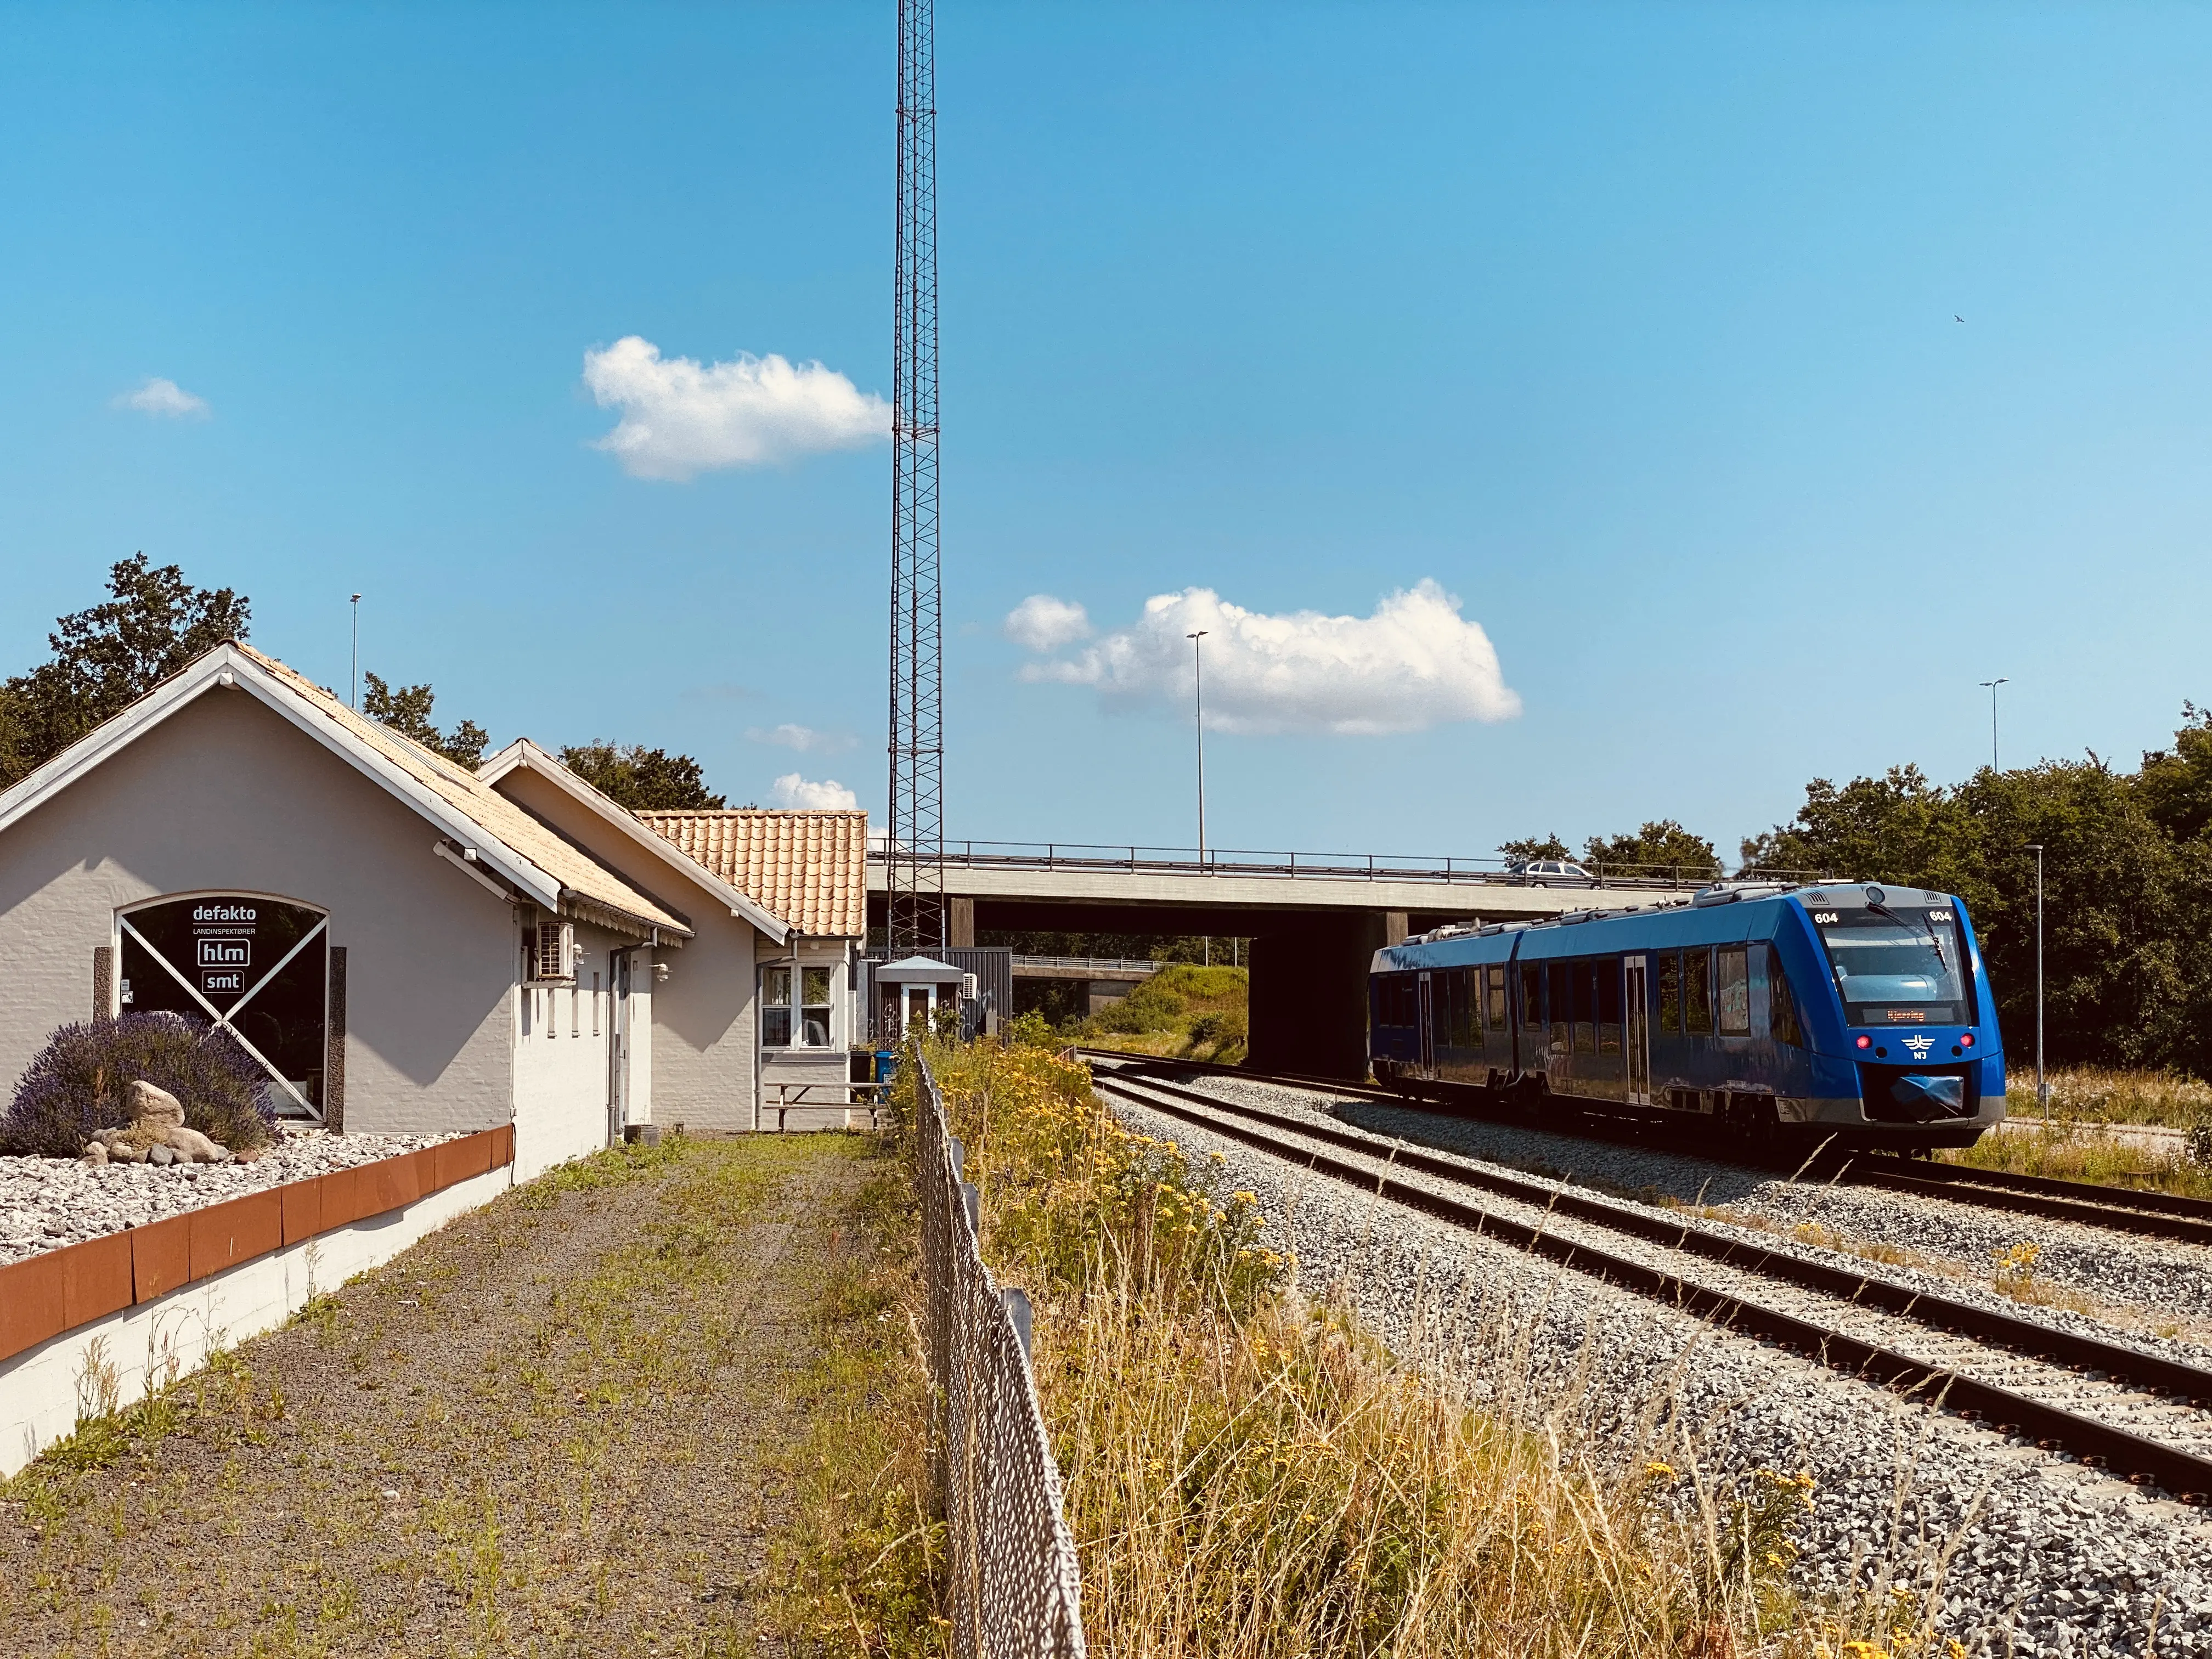 Billede af tog ud for Skalborg Station.